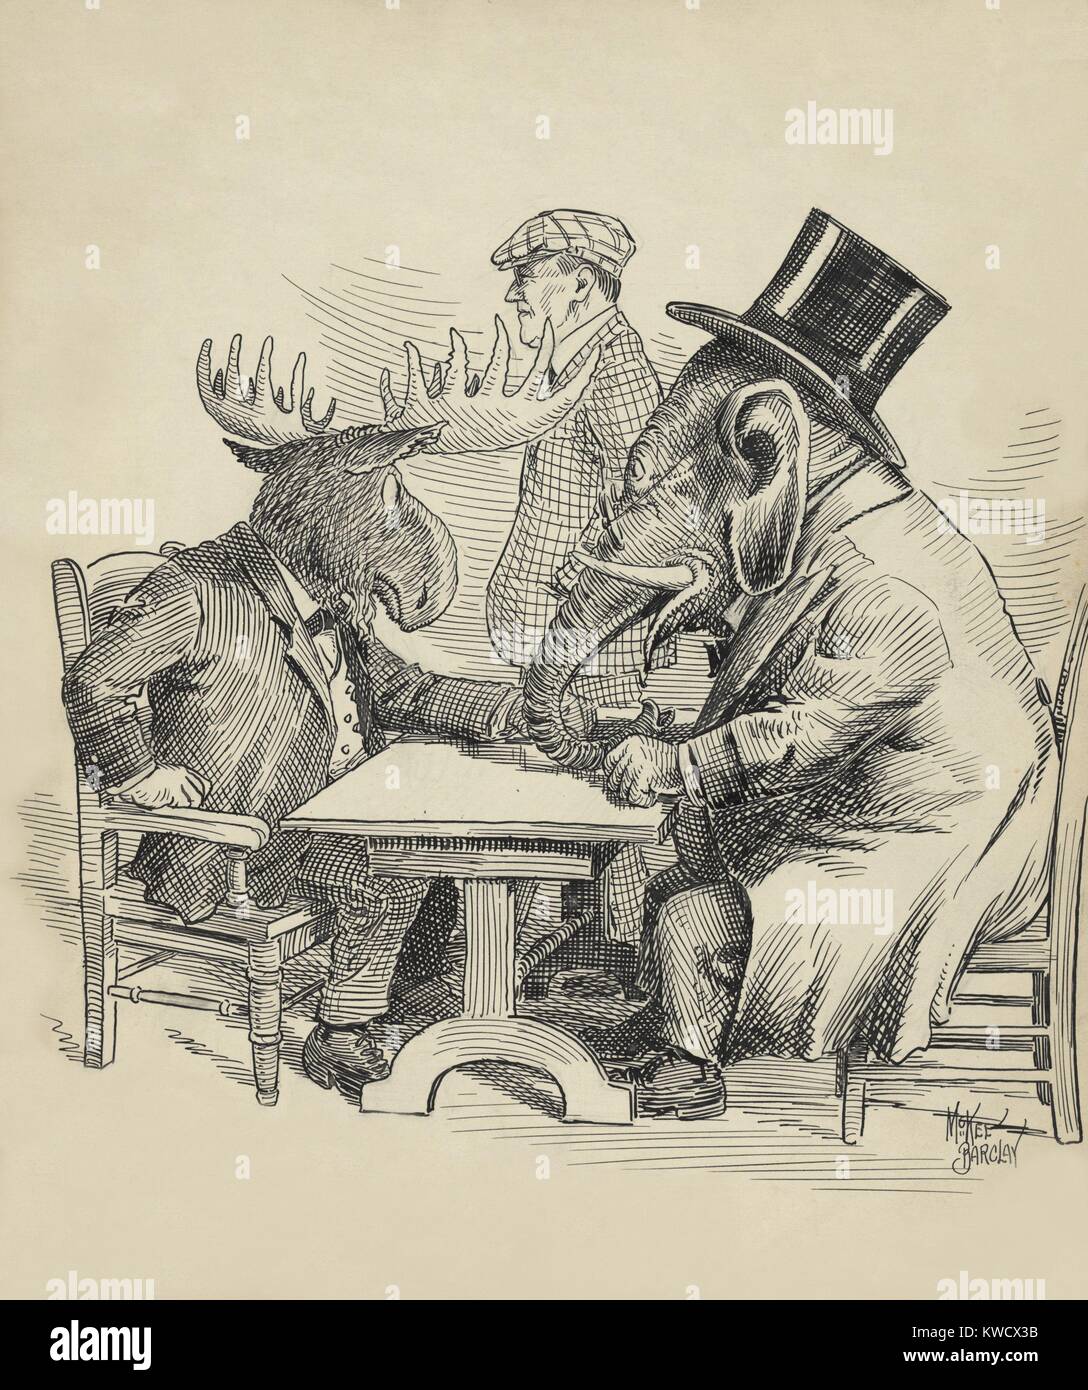 Cartoon politico circa il 1912 elezione presidenziale dalla Barclay McKee. L'elefante repubblicano conferenze con Theodore Roosevelts ribelle Bull alci, come democratici Woodrow Wilson da passeggiate (BSLOC 2017 2 130) Foto Stock